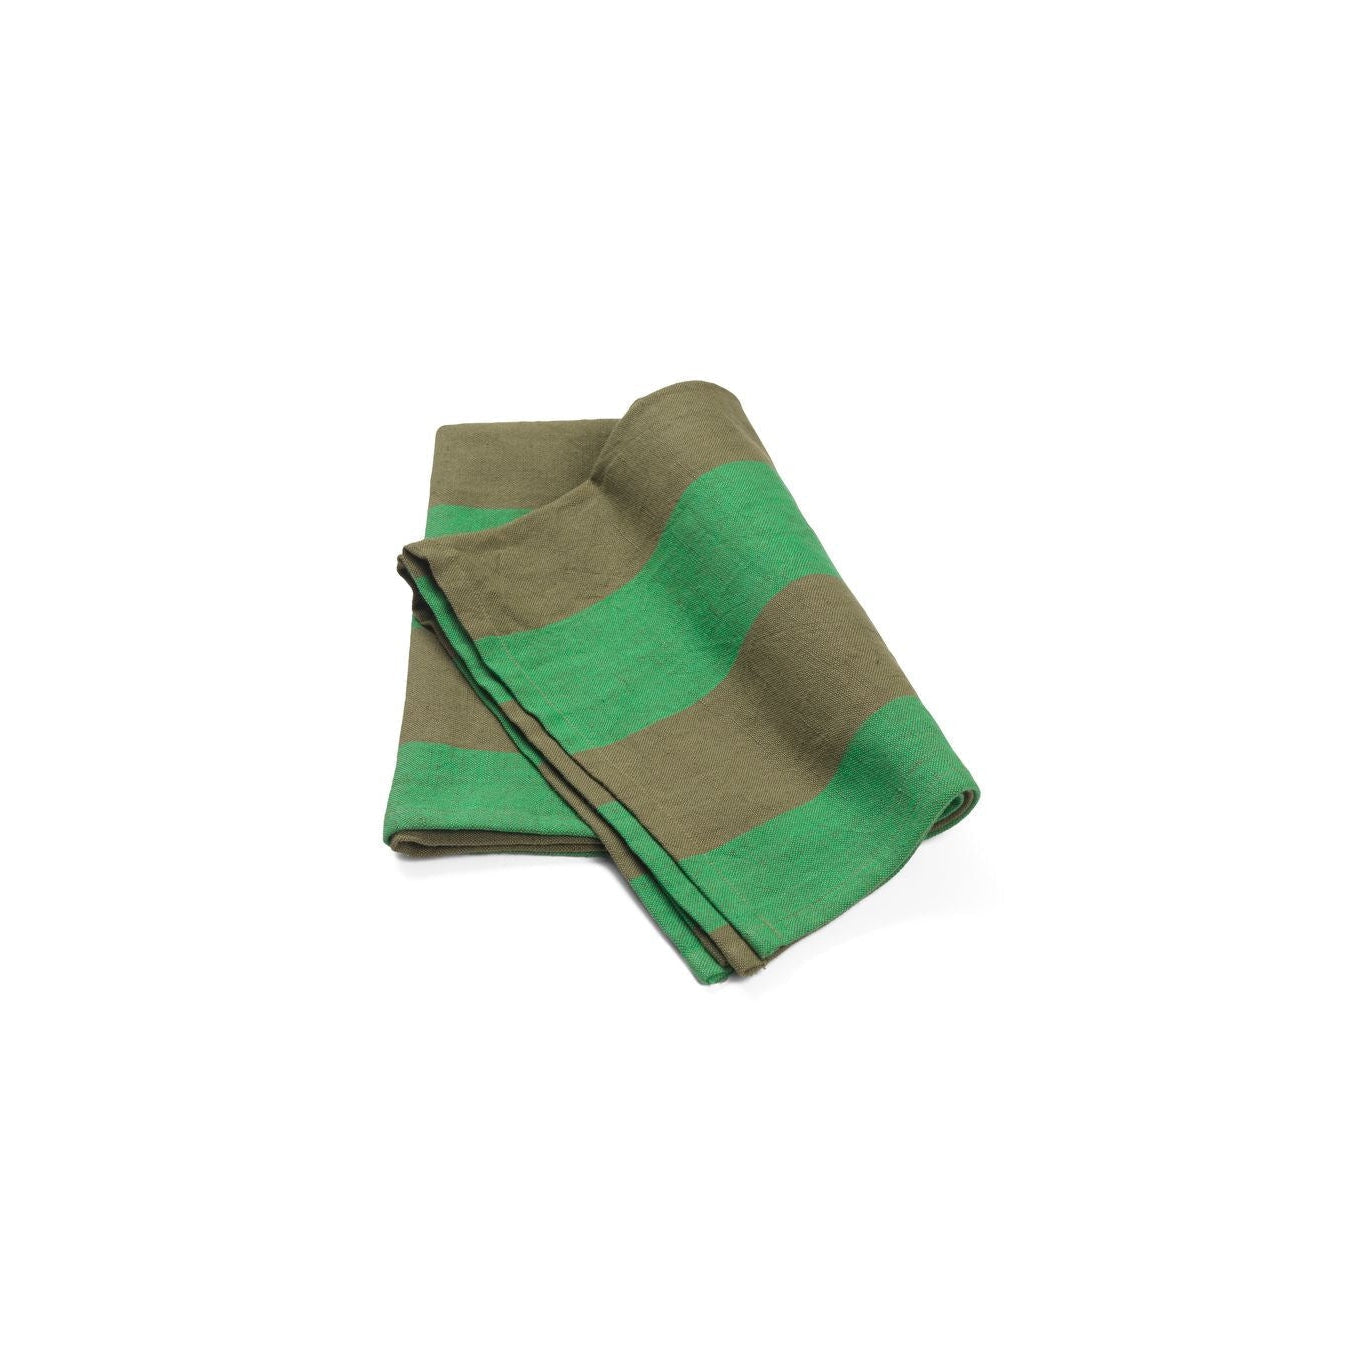 Ferm Living Hale čajový ručník, olivová/zelená